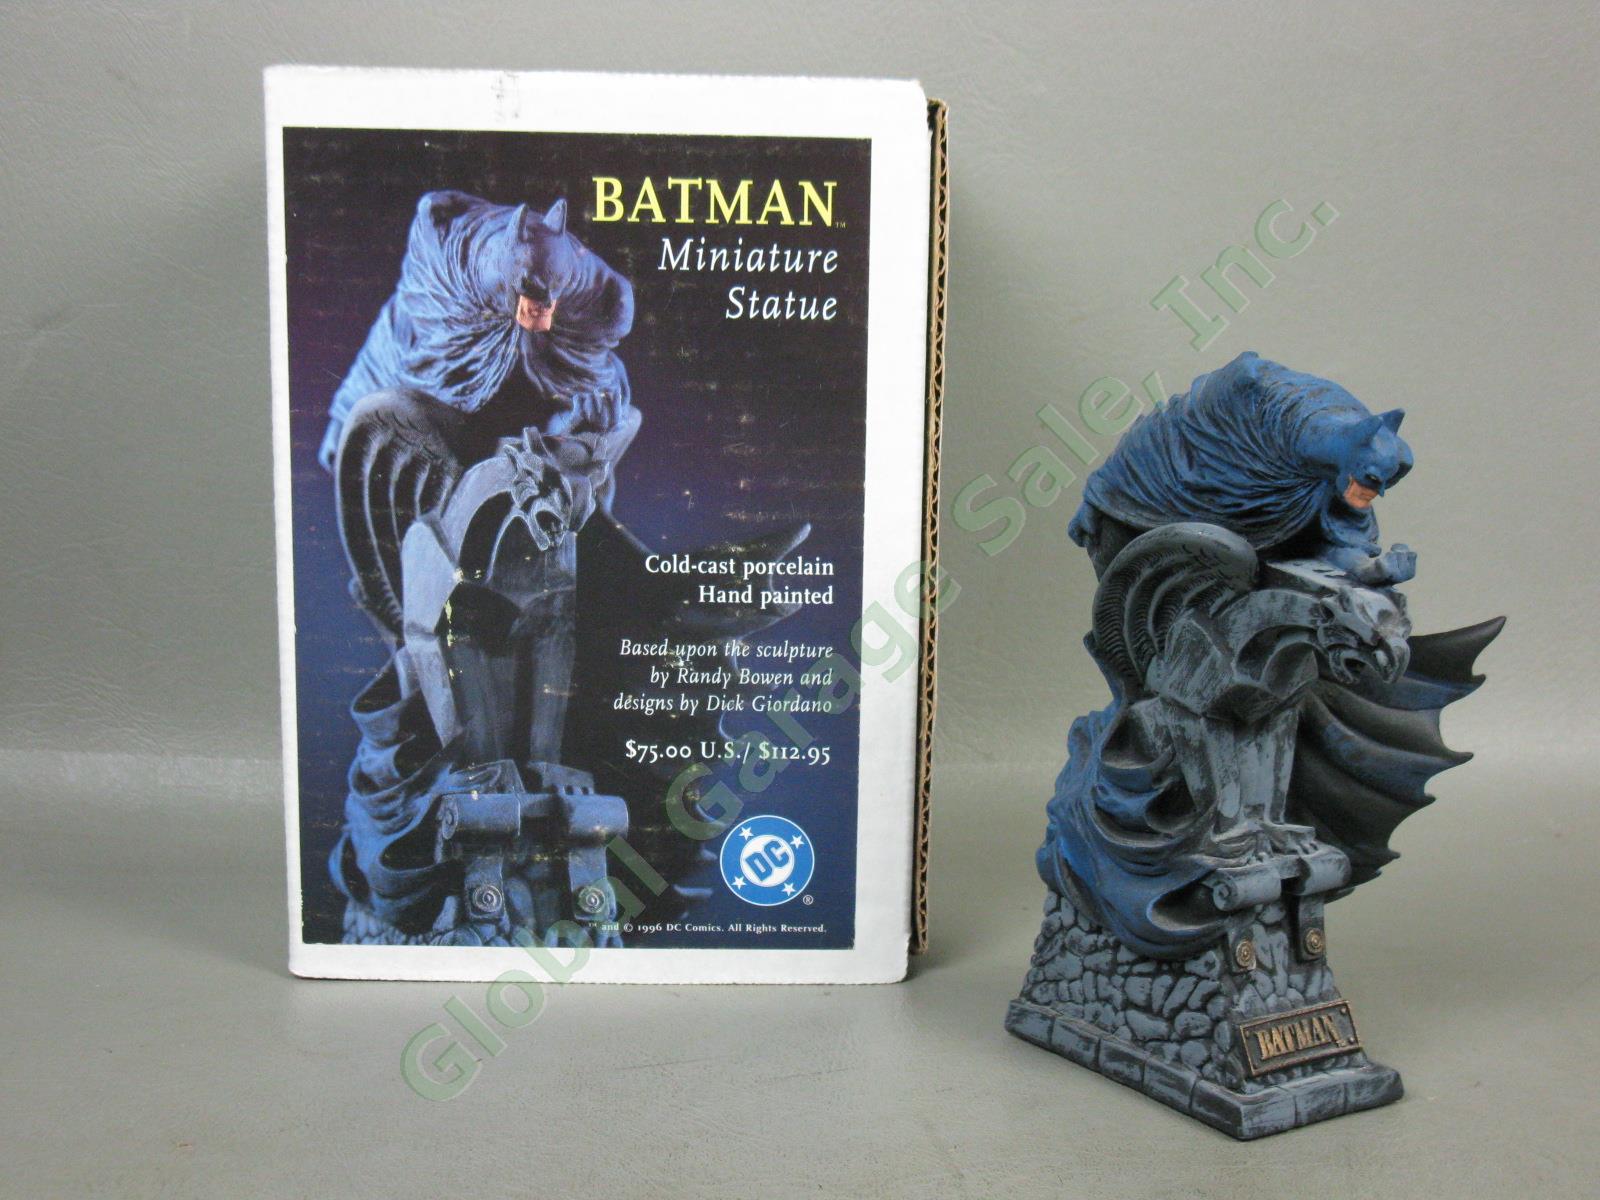 Vtg 1996 DC Comics Ltd Ed Batman Miniature Gold Cast Porcelain Painted Statue NR